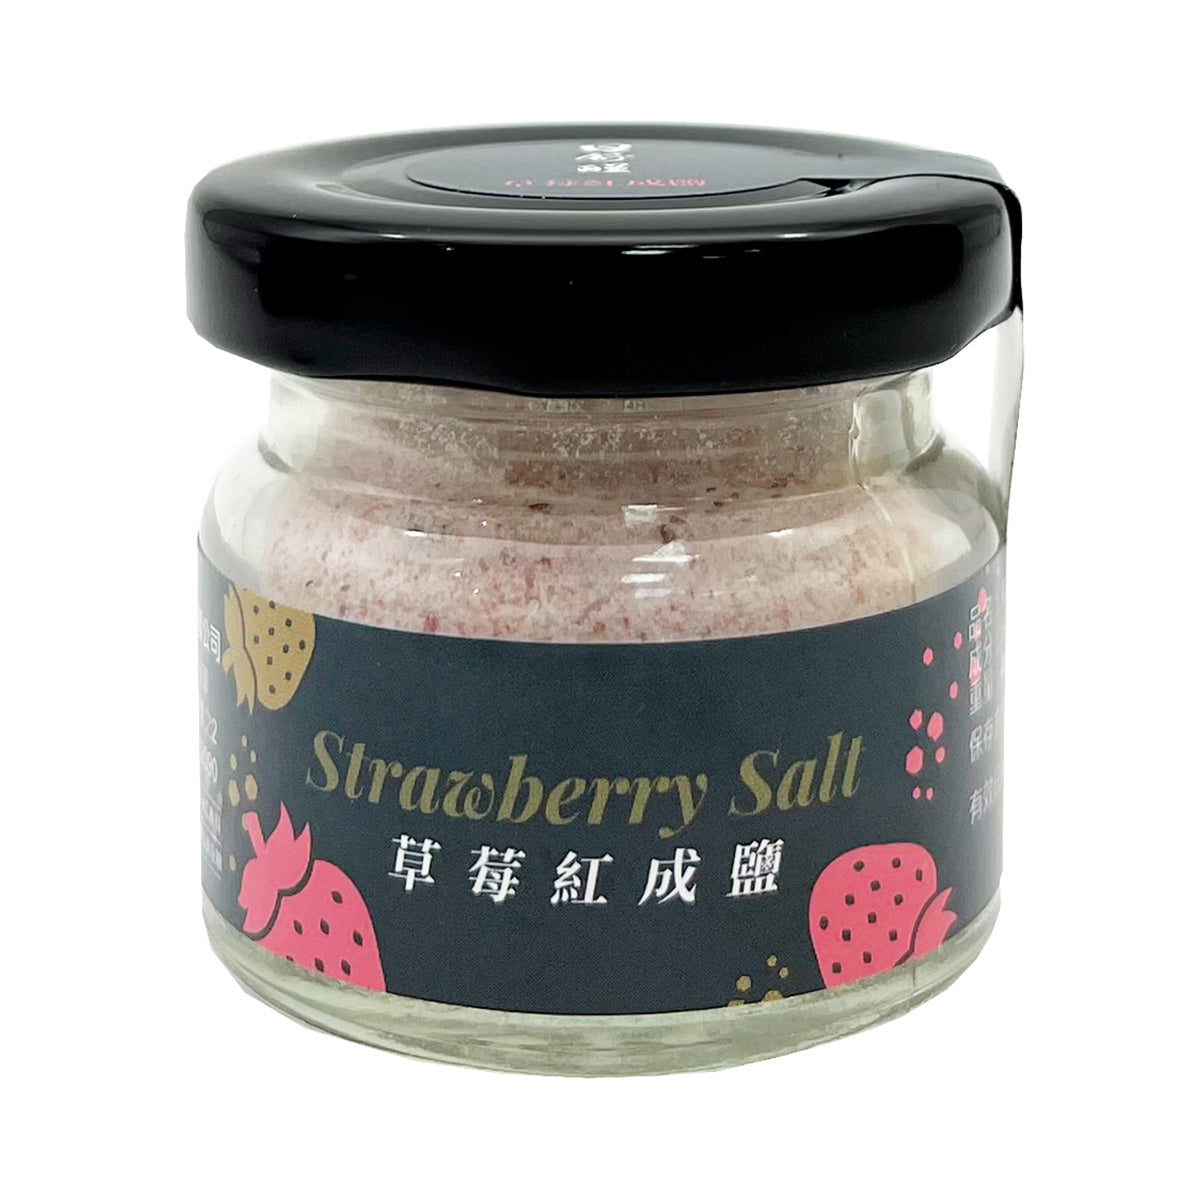 【AWAKENED TASTE】Strawberry Salt 40g